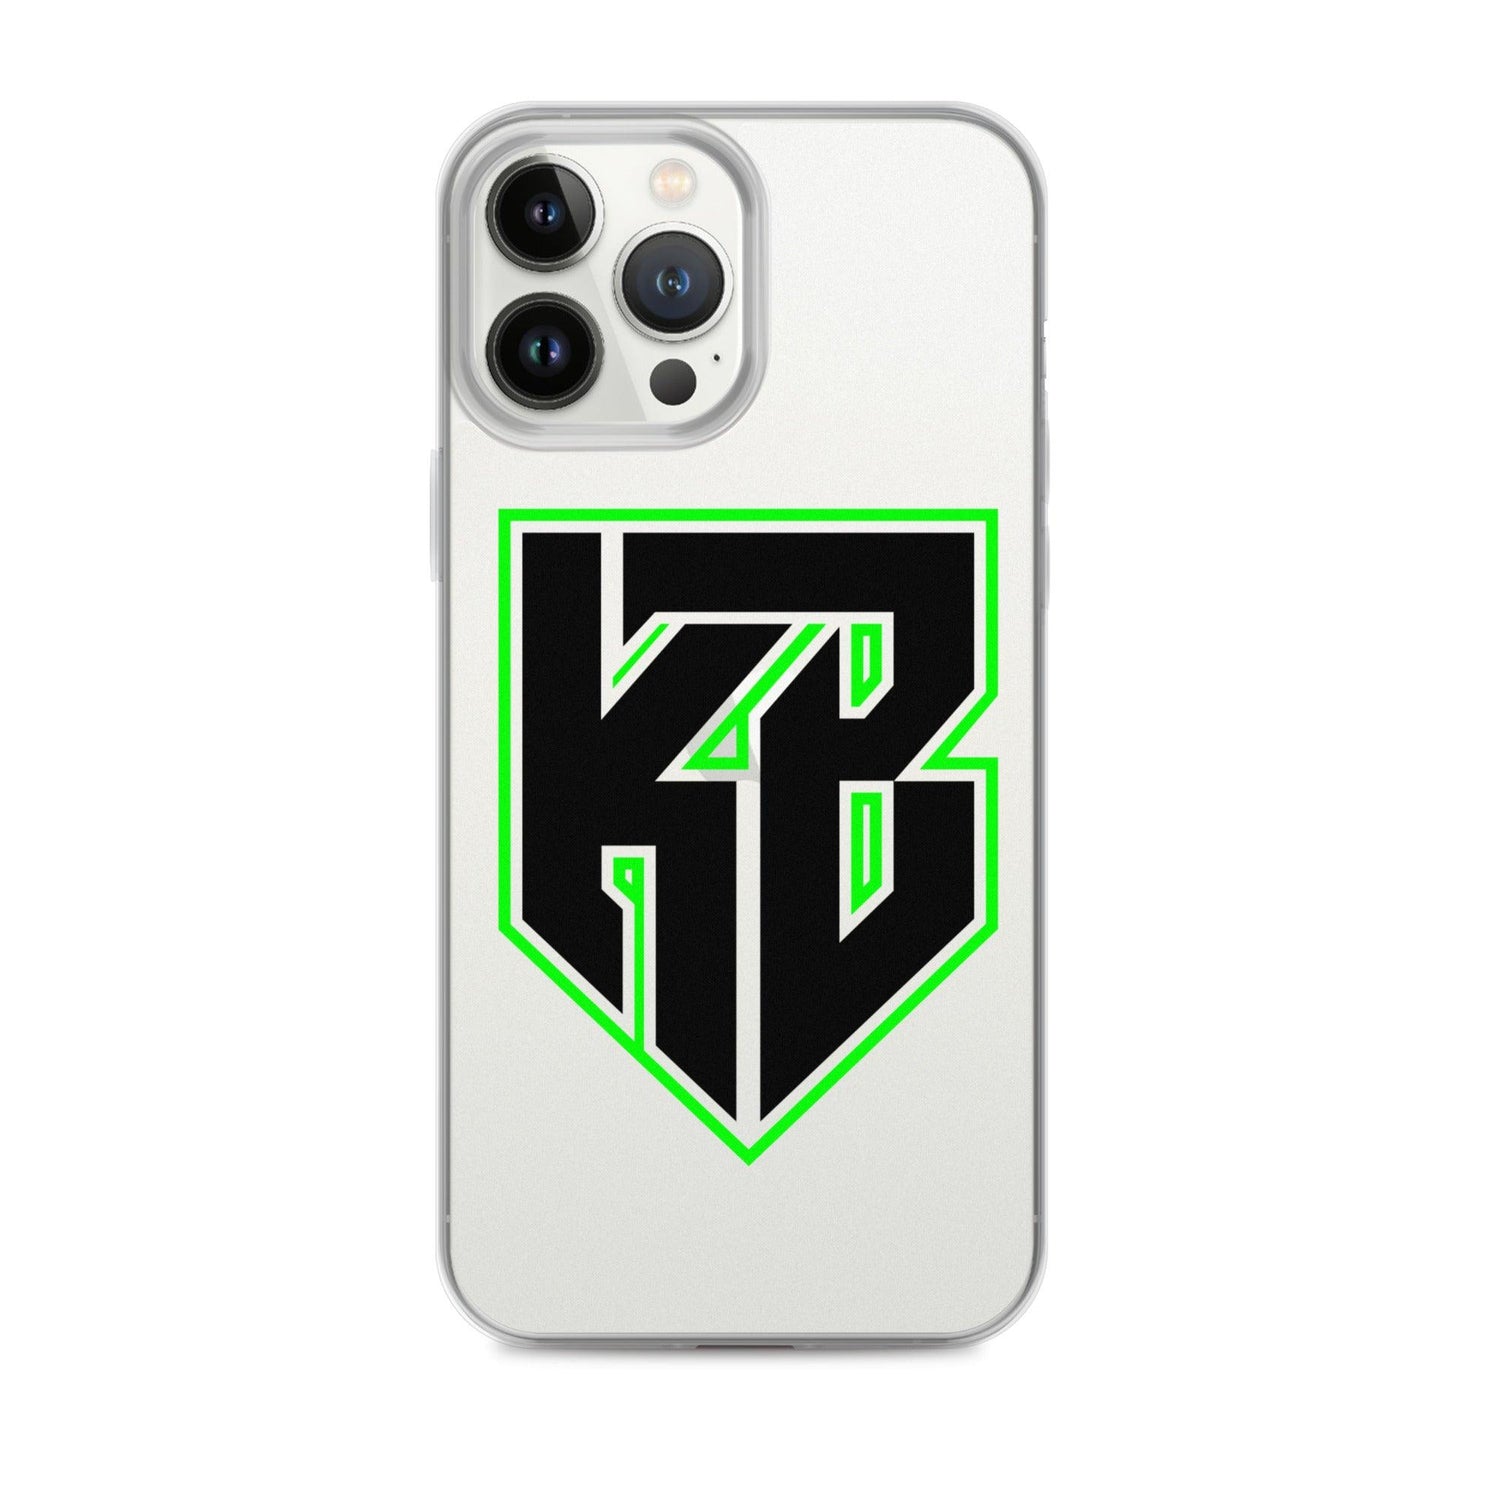 Kendell Brooks "KB" iPhone Case - Fan Arch